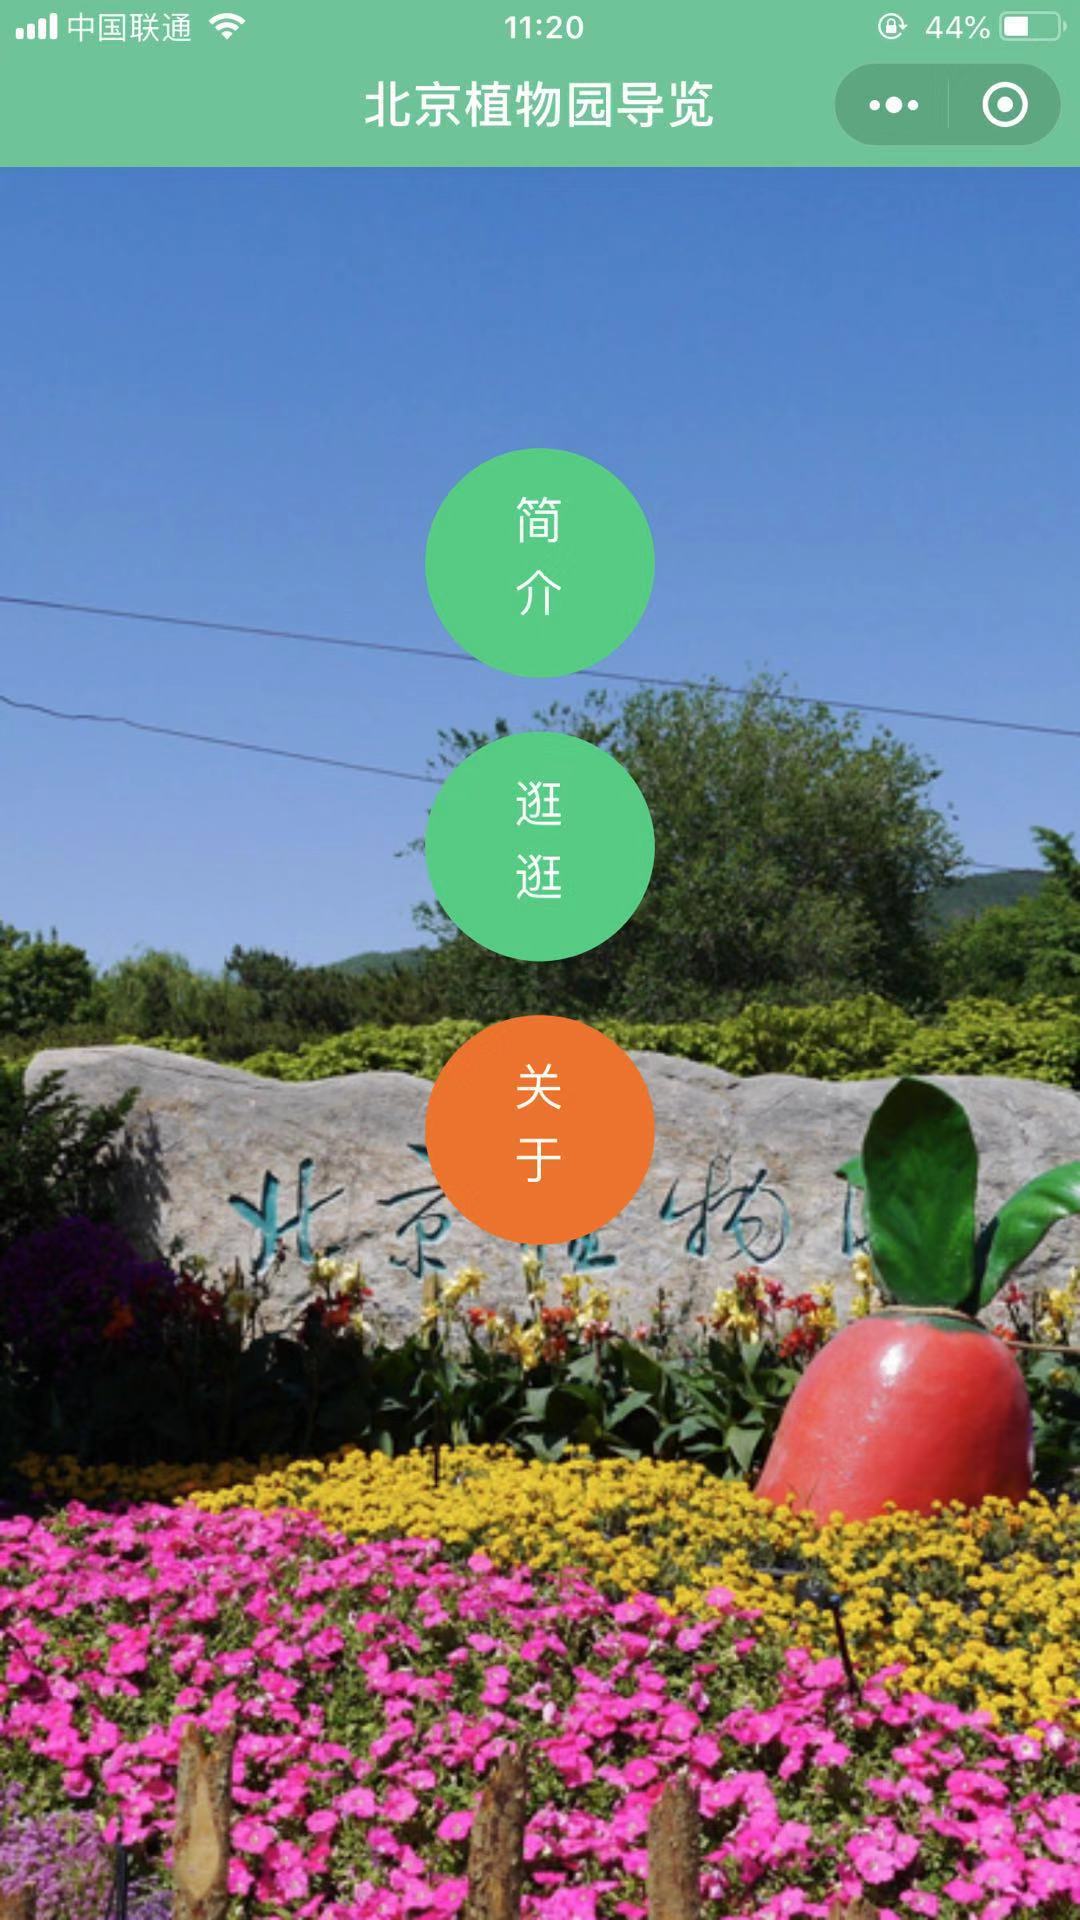 北京植物园导览_北京植物园导览小程序_北京植物园导览微信小程序